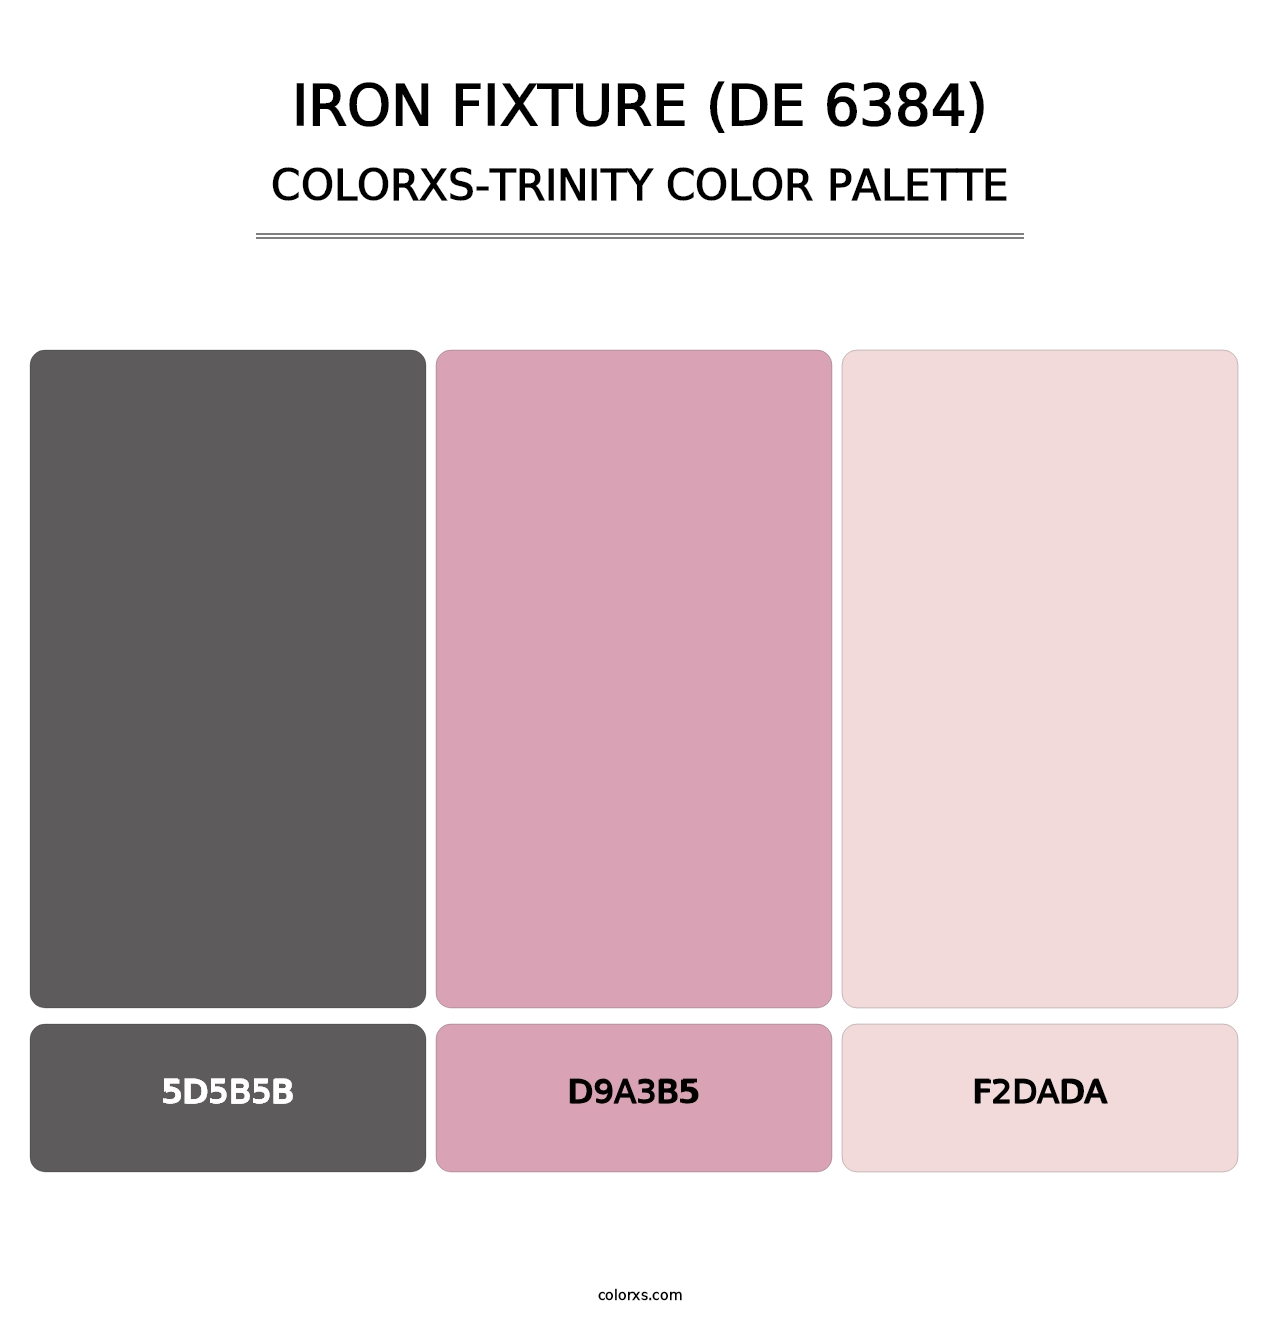 Iron Fixture (DE 6384) - Colorxs Trinity Palette